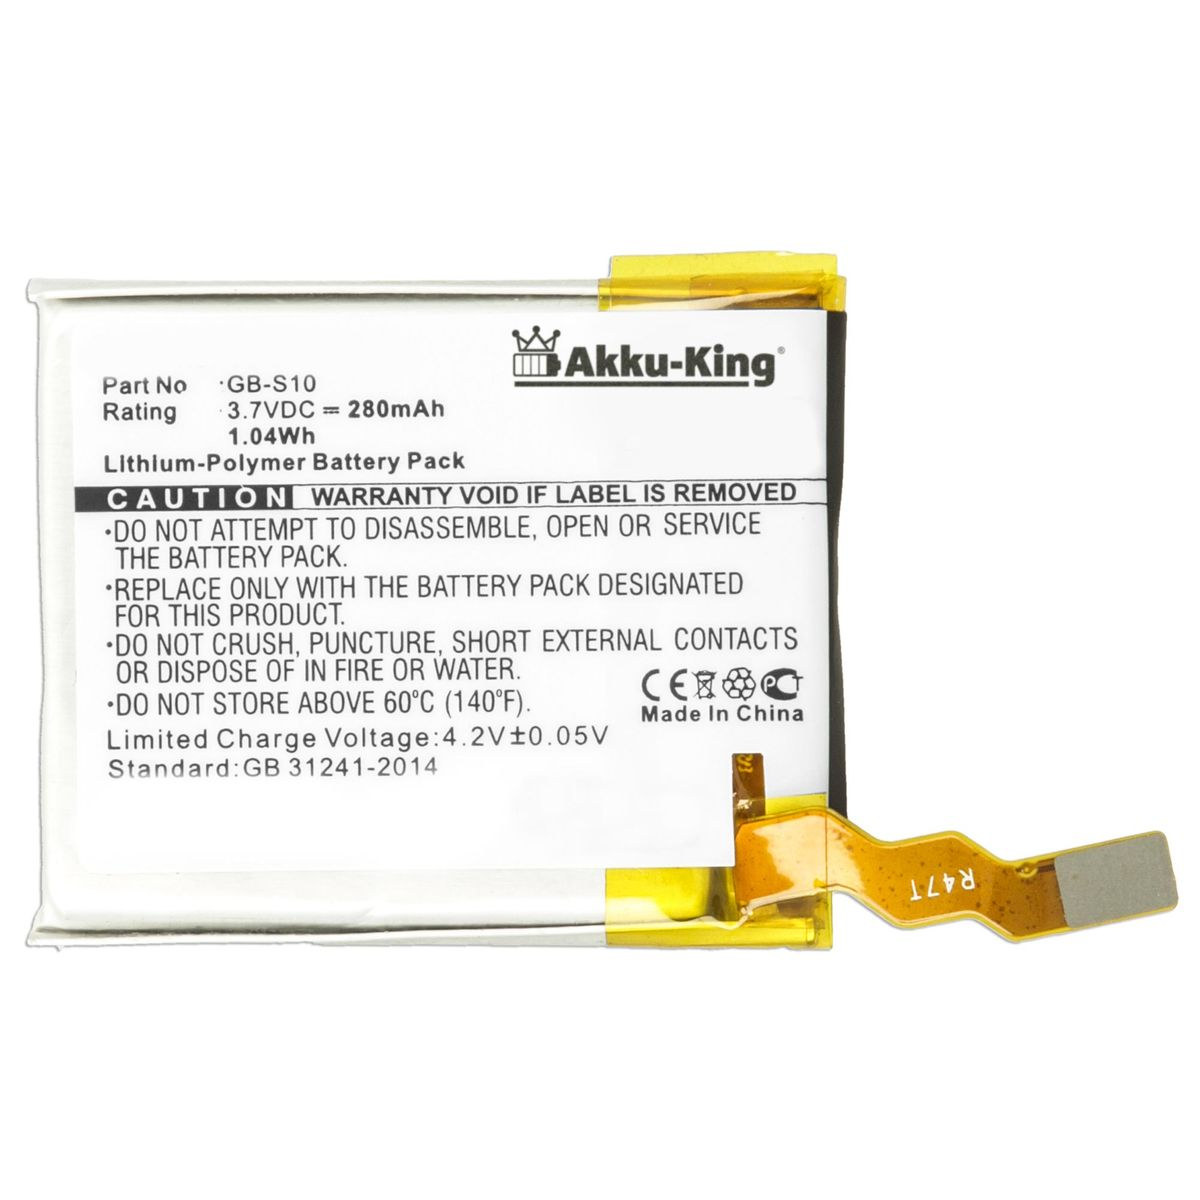 AKKU-KING Akku kompatibel 280mAh GB-S10 Smartwatch-Akku, Volt, Sony 3.7 Li-Polymer mit